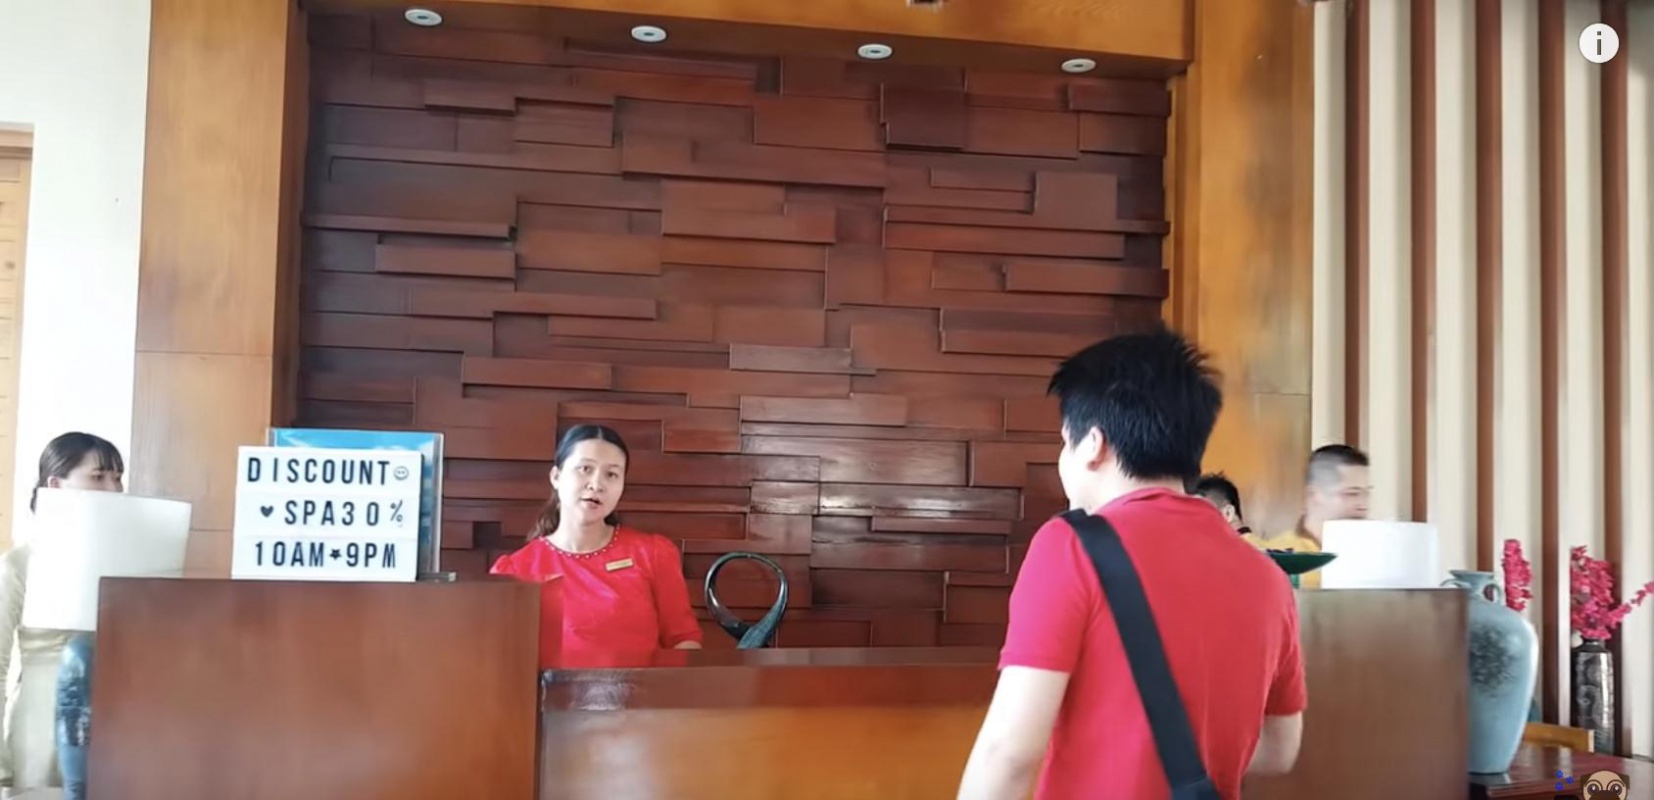 Resort 5* hay động giang hồ khi du khách bị lừa tiền phòng và dọa đánh